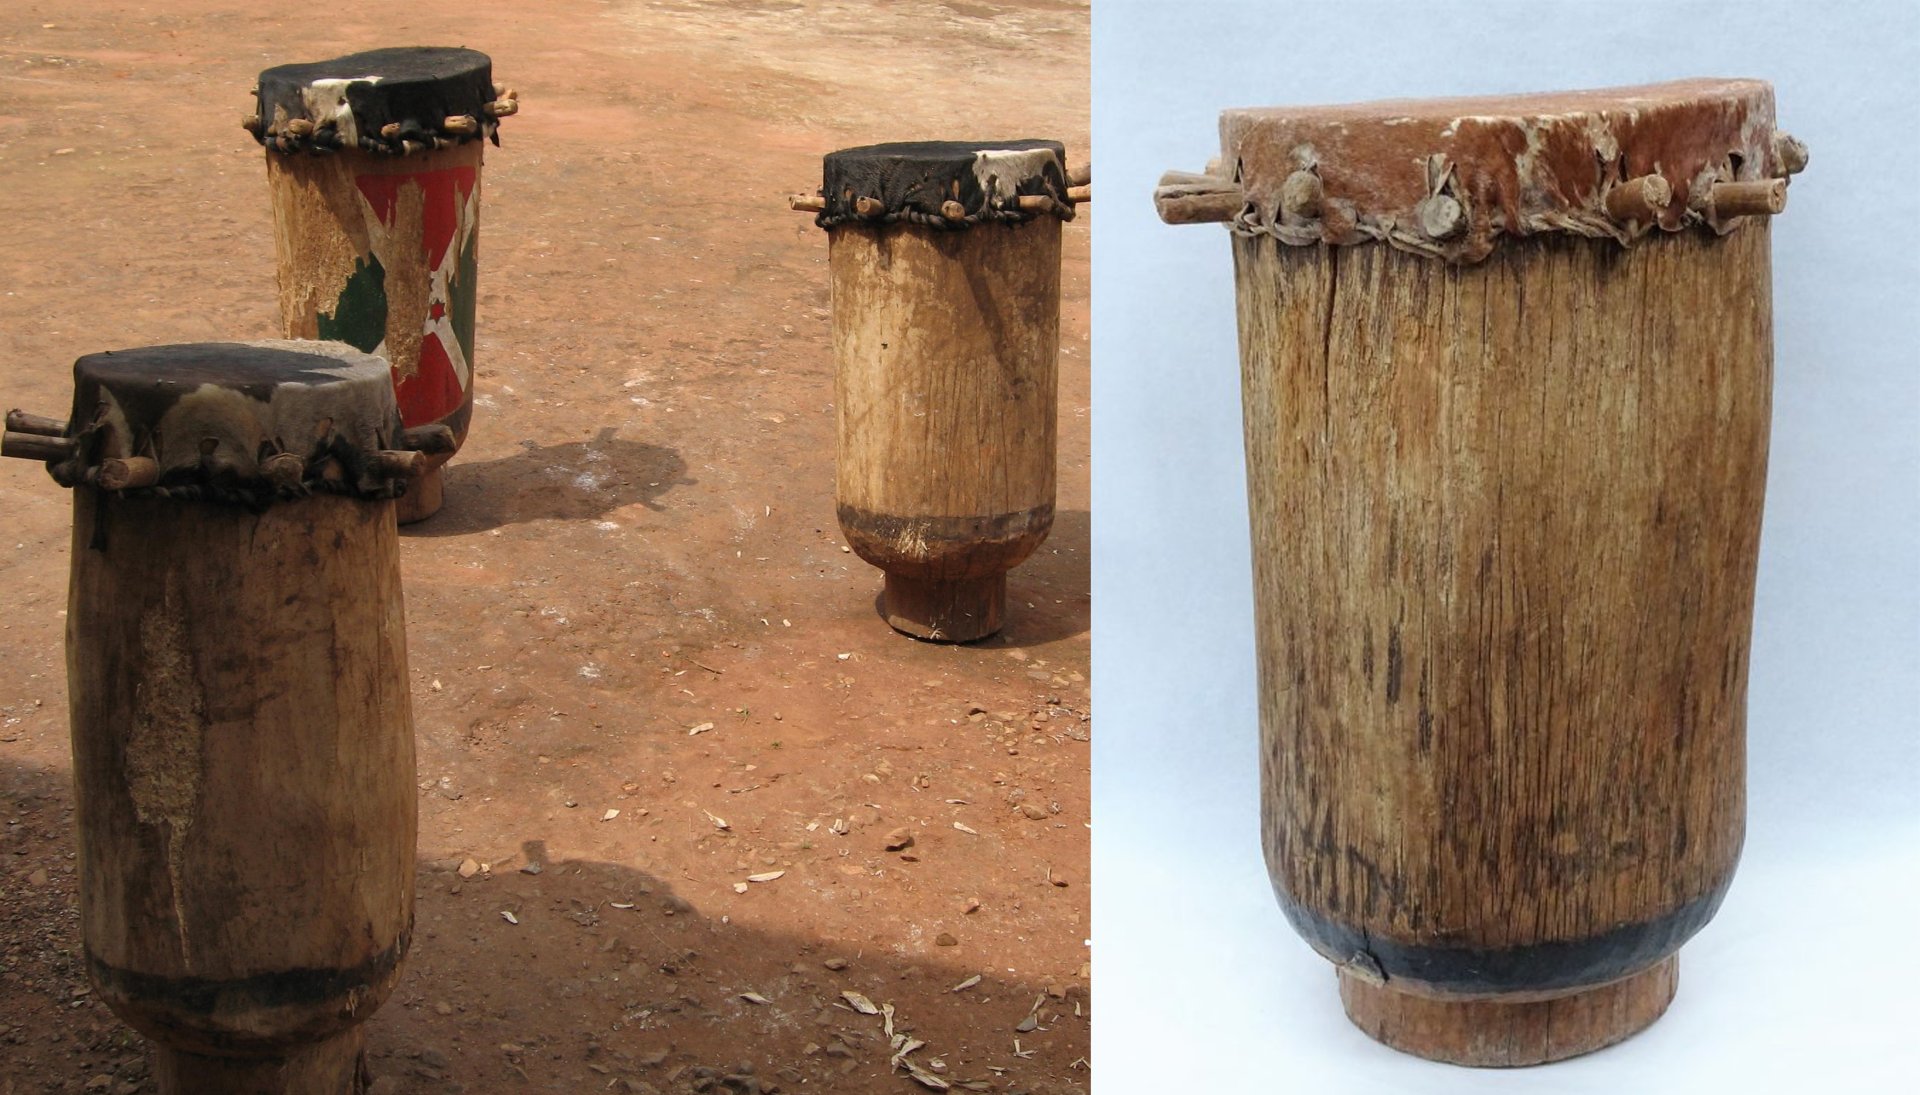 2 A) Skupina doprovodných bubnů z oblasti Gitega (výřez z fotografie). Převzato z: https://en.wikipedia.org/wiki/Karyenda   B) Buben Karyenda. Převzato z: https://musicaparaver.org /instruments/type/cylinder-drum/origin/africa